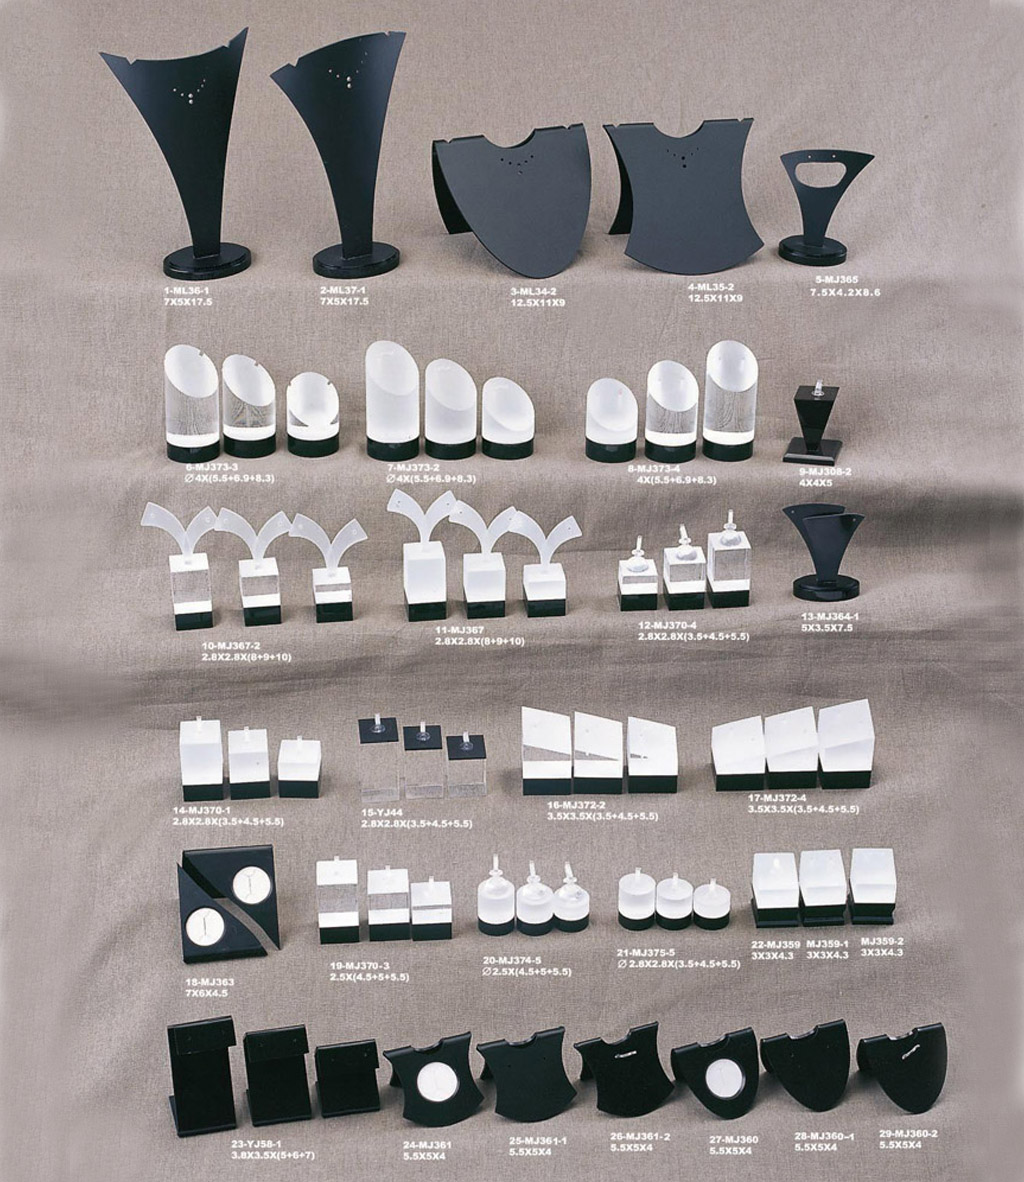 Bianco esposizione dei monili acrilico visualizzazione acrilico nero Moda stand e visualizzazione acrilico con logo per l'anello / orecchino / panden ecc